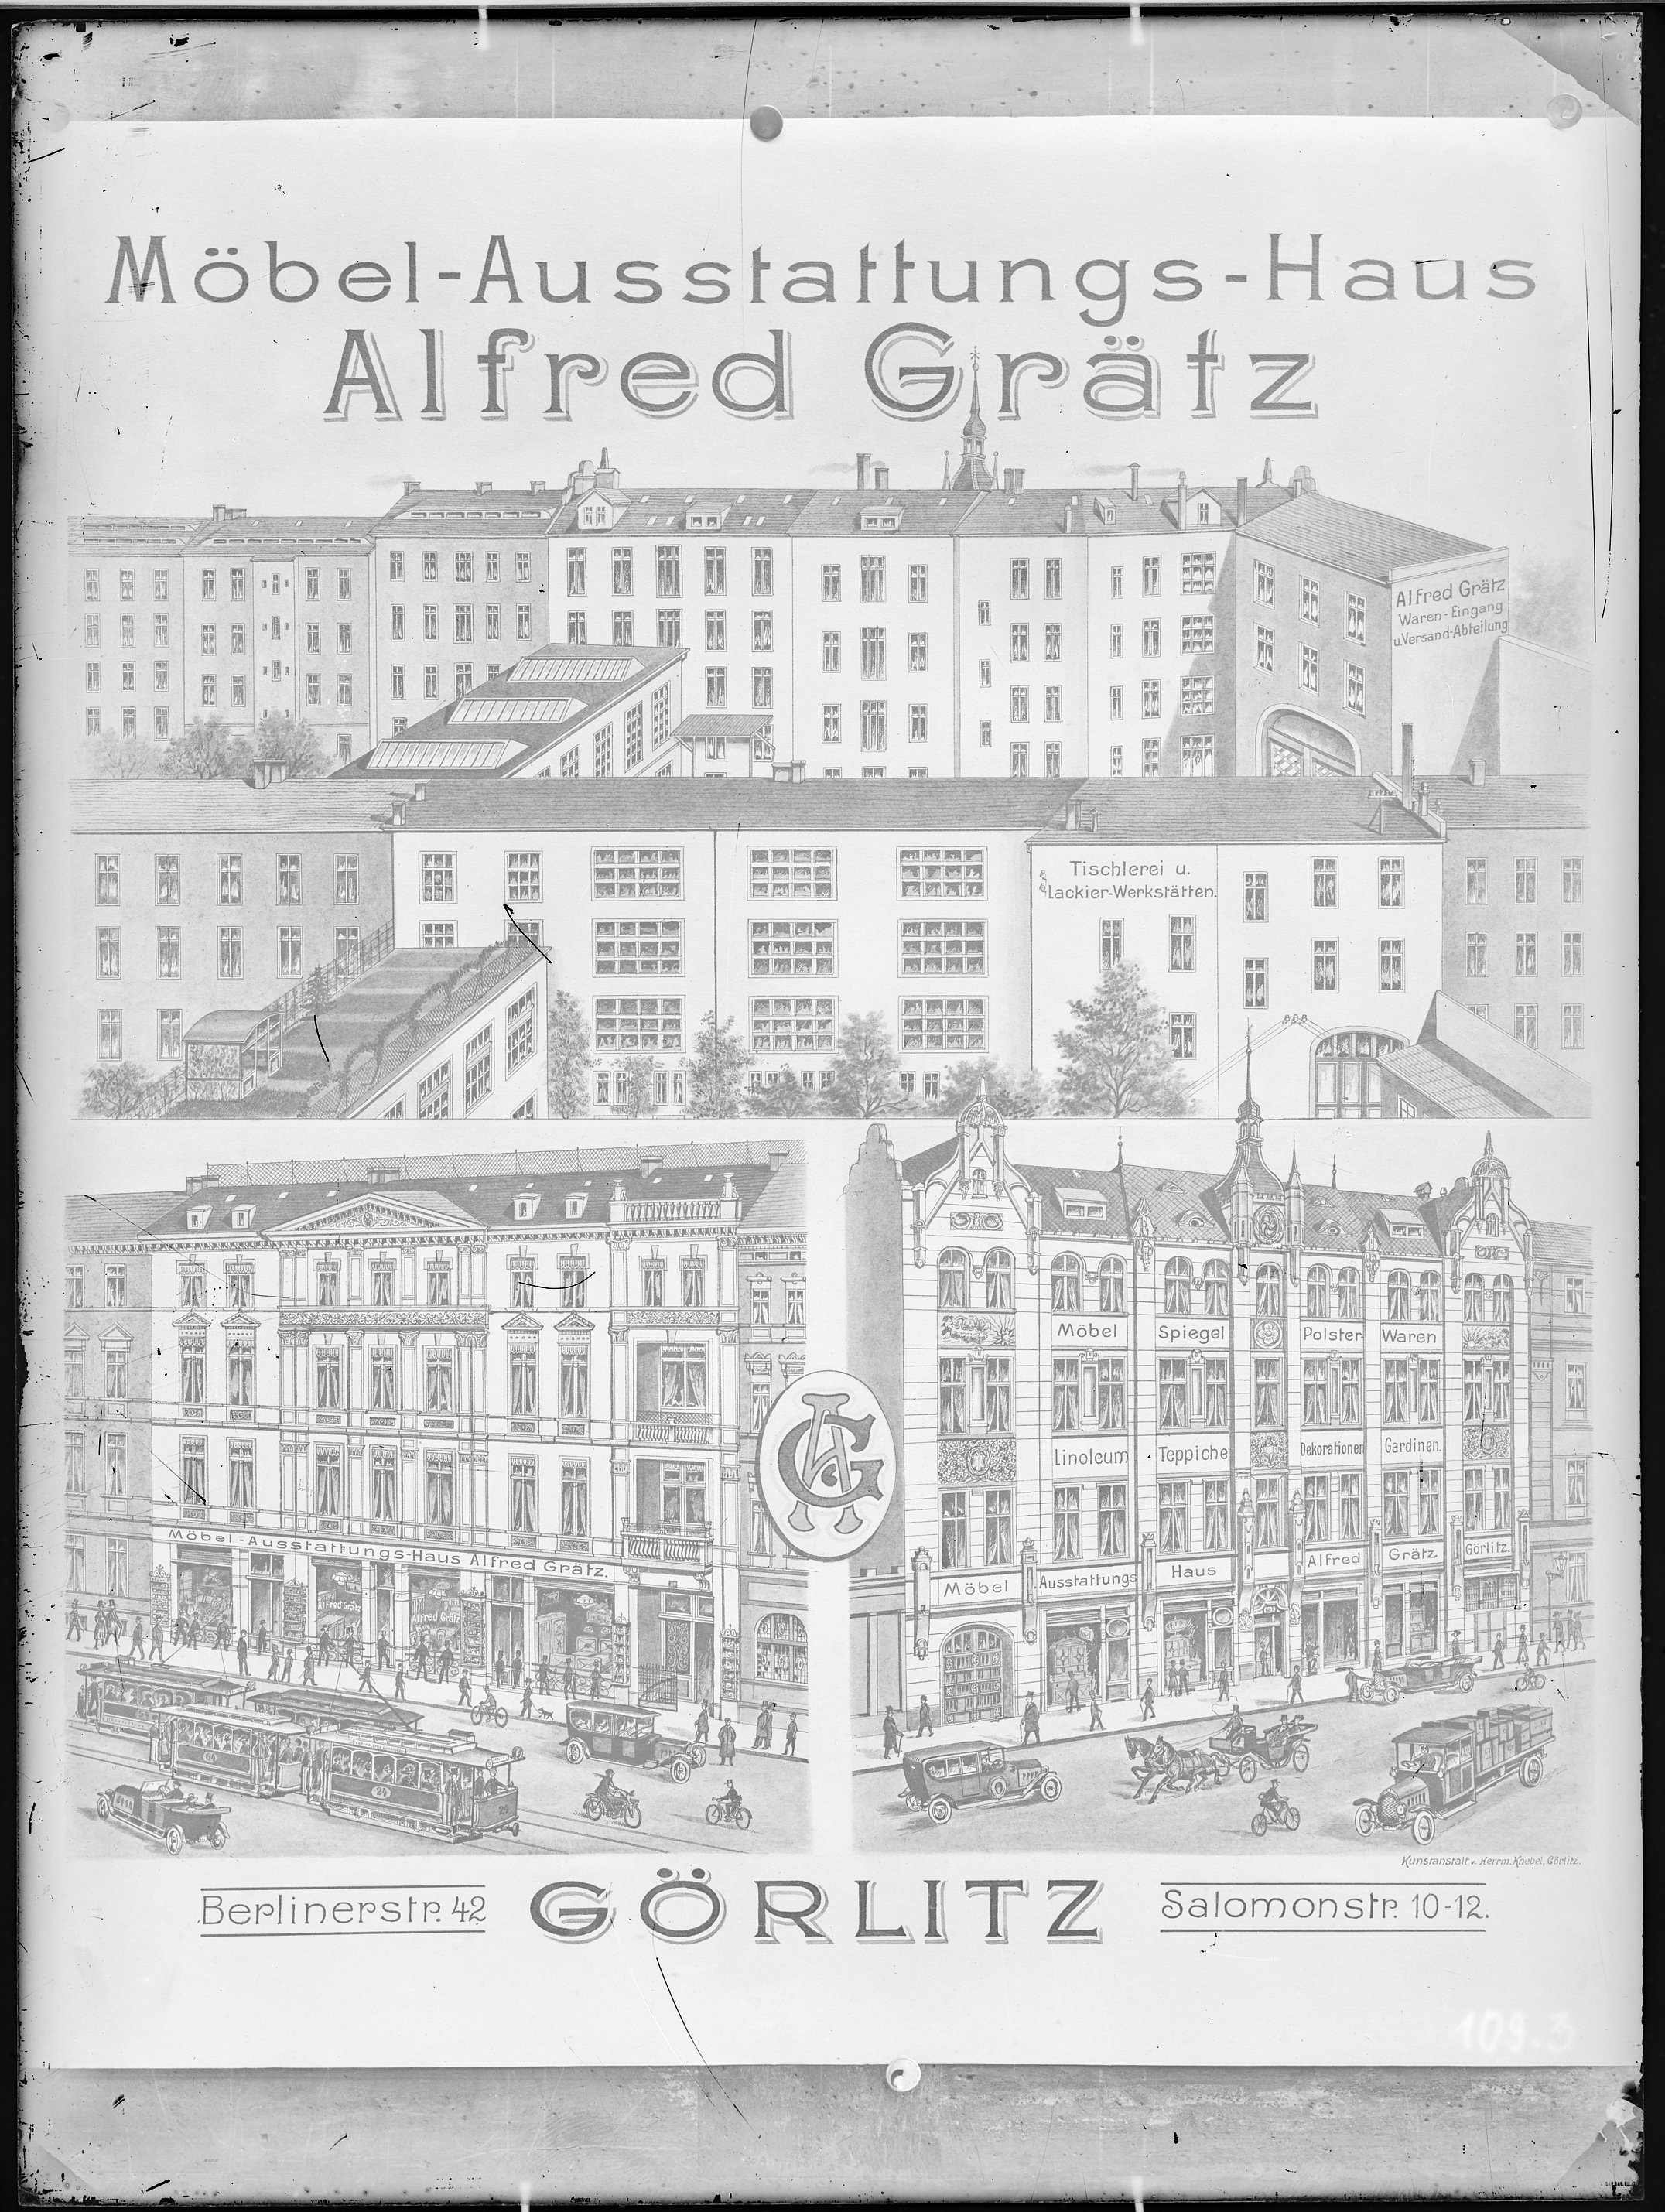 Fotografie: Möbel-Ausstattungs-Haus Alfred Grätz, Görlitz, Berliner Straße 42 und Salomonstraße 10-12 (Vorderansicht), um 1924? (Verkehrsmuseum Dresden CC BY-NC-SA)